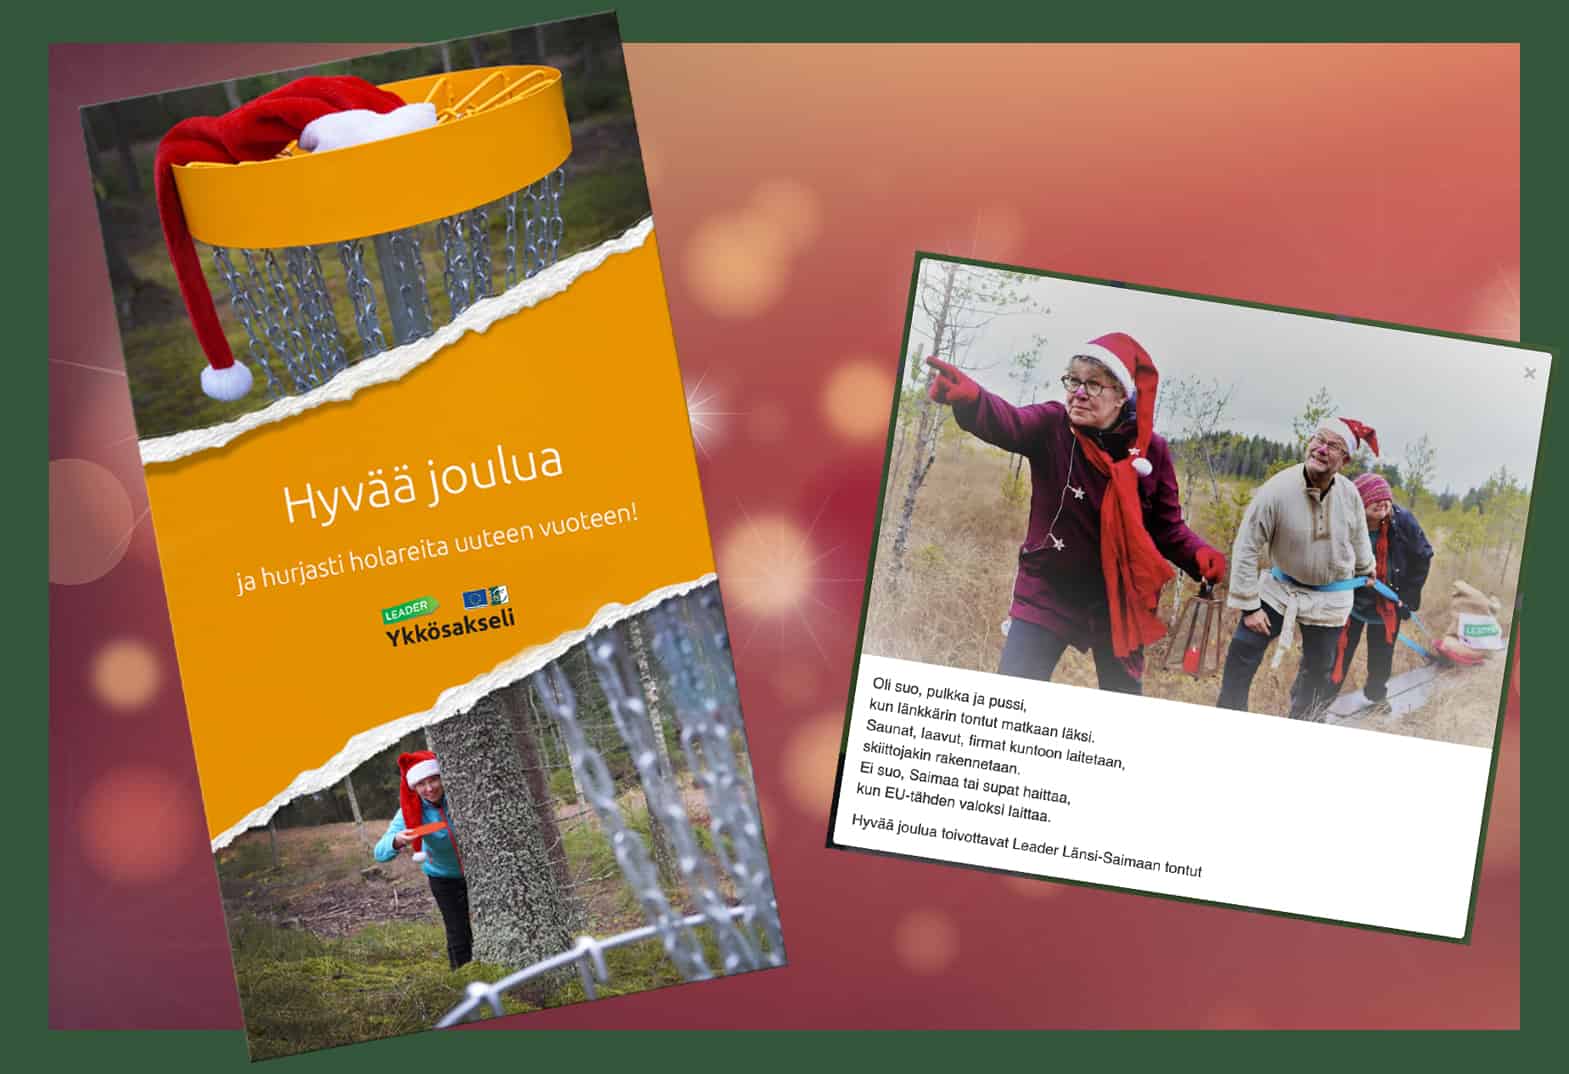 Vasemmalla Ykkösakselin joulukortti ja oikealla Leader Länsi-Saimaan kortti.